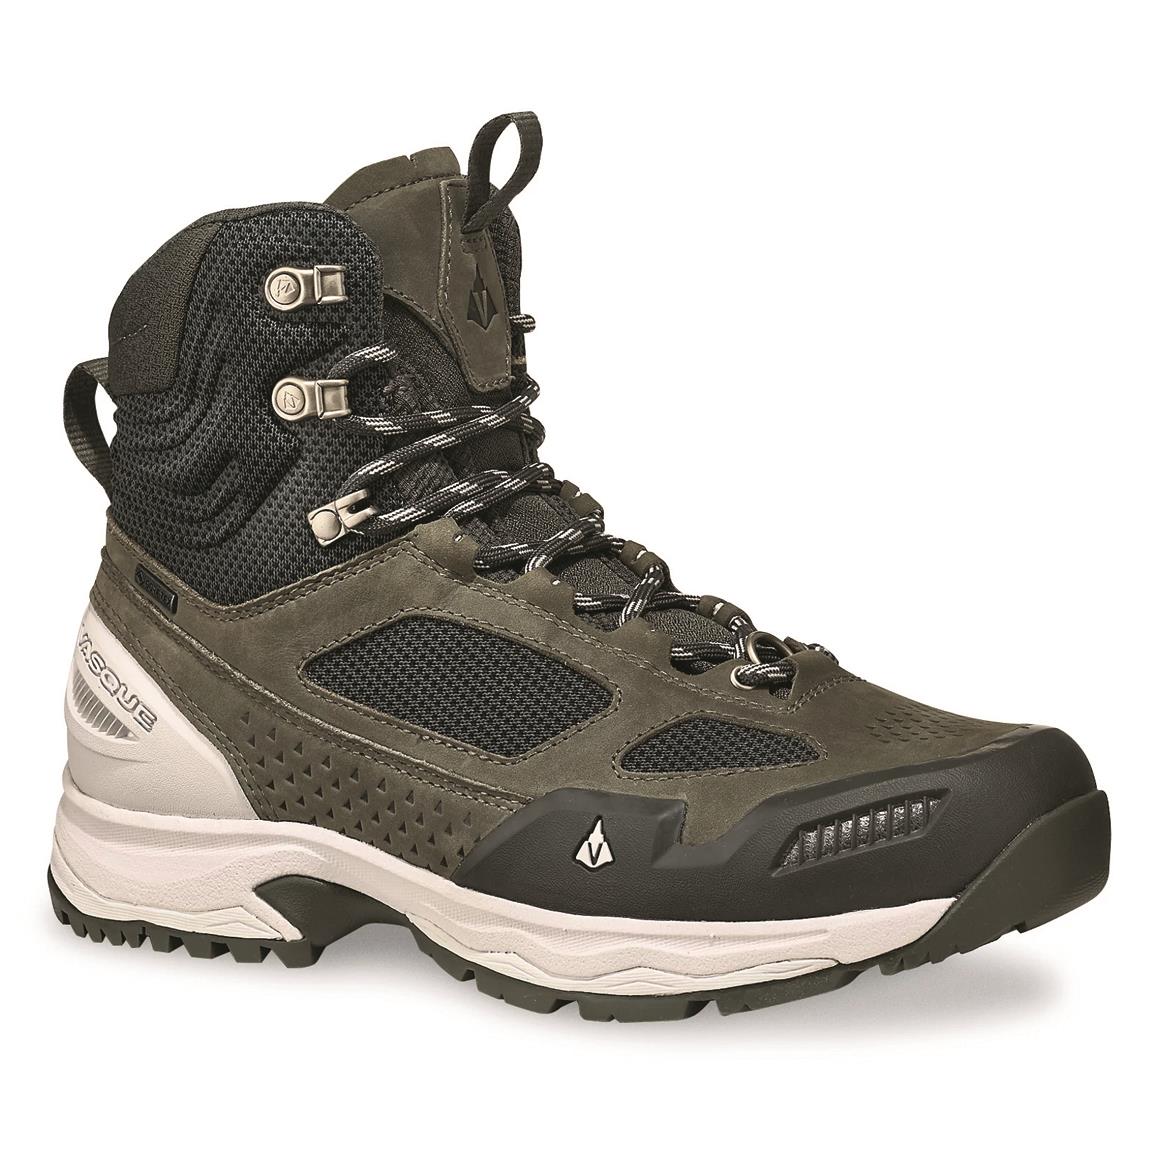 Vasque Women's Breeze WT GORE-TEX Hiking Boots, Dark Shadow